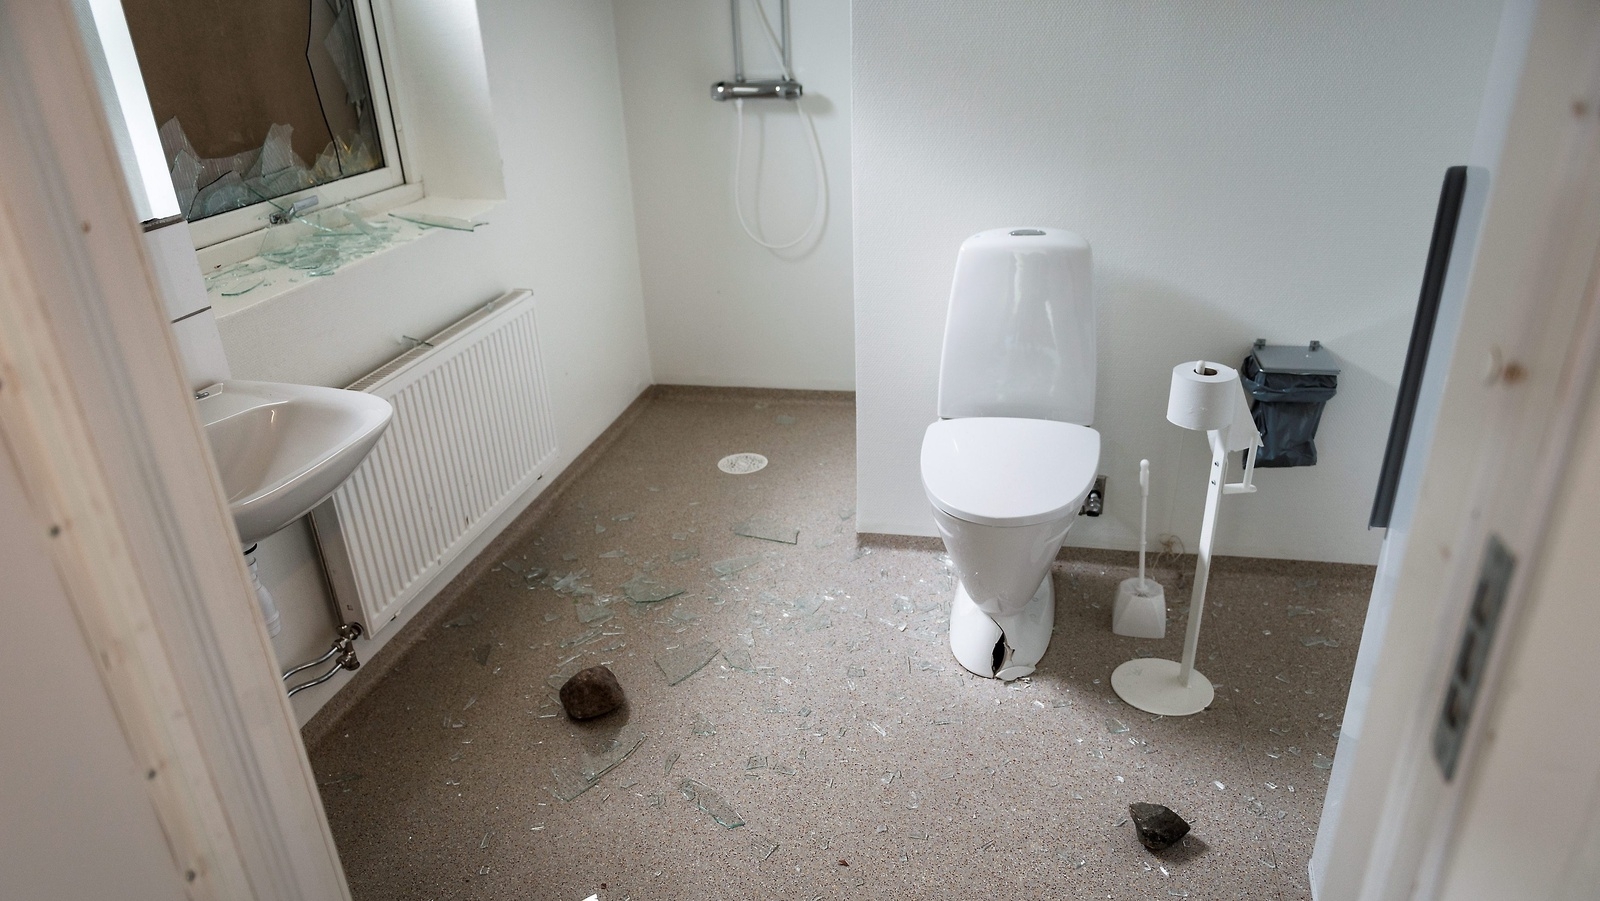 Stenar kastades in genom ett fönster och träffade en toalett som gick sönder. FOTO: SOFIA ÅSTRÖM                                                             FOTO: SOFIA ÅSTRÖM